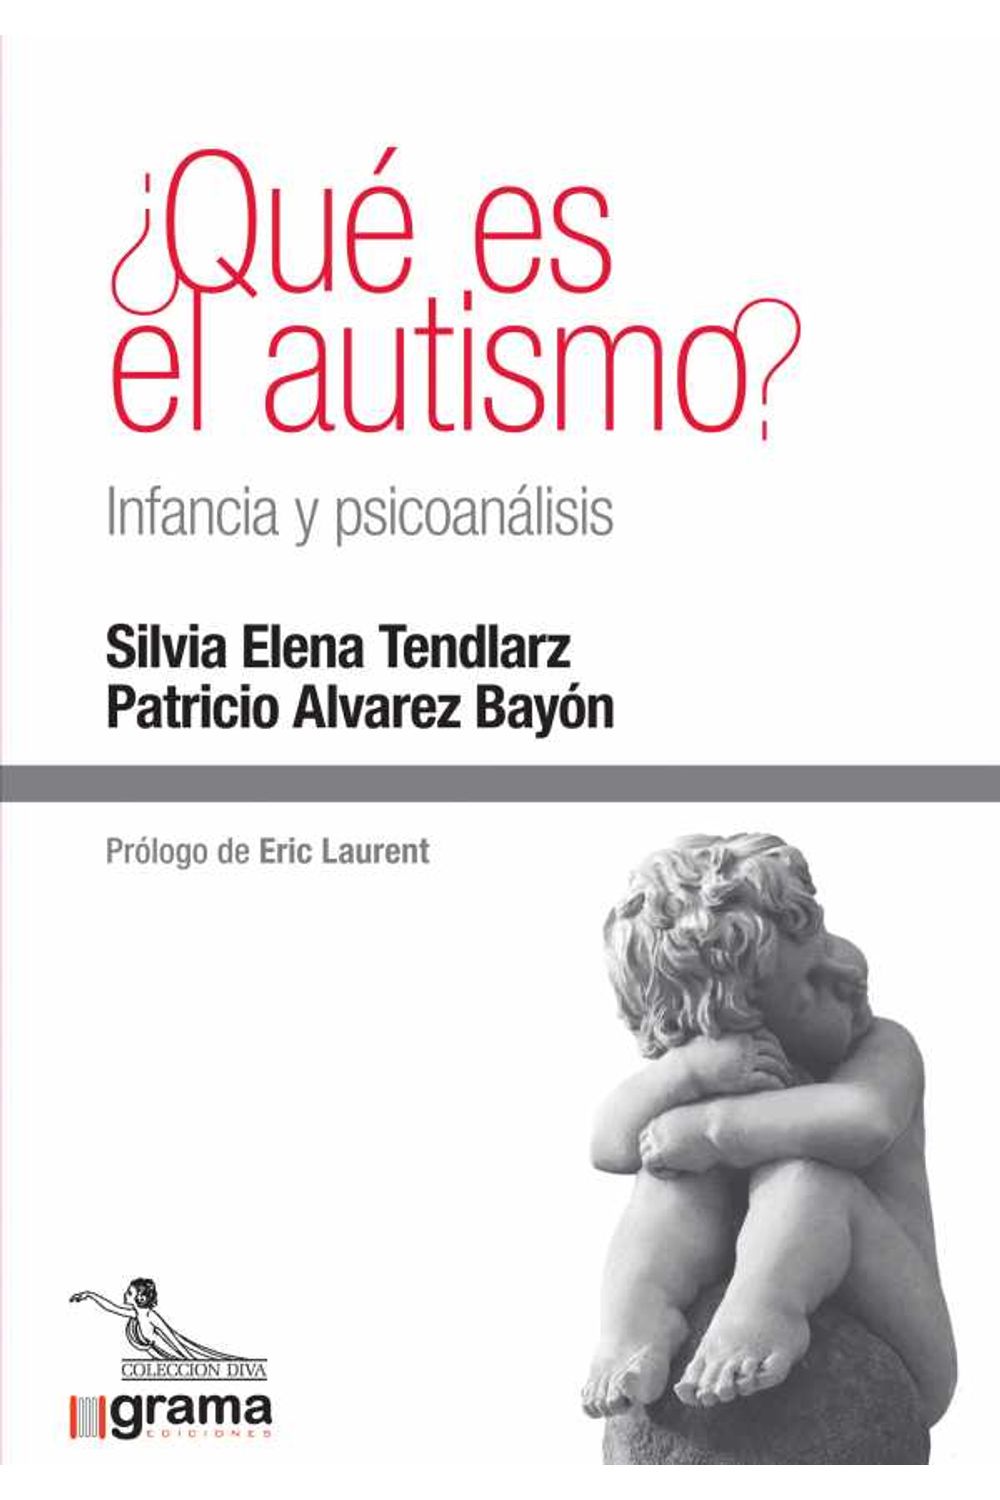 bw-iquestqueacute-es-el-autismo-infancia-y-psicoanaacutelisis-grama-ediciones-9789878372426